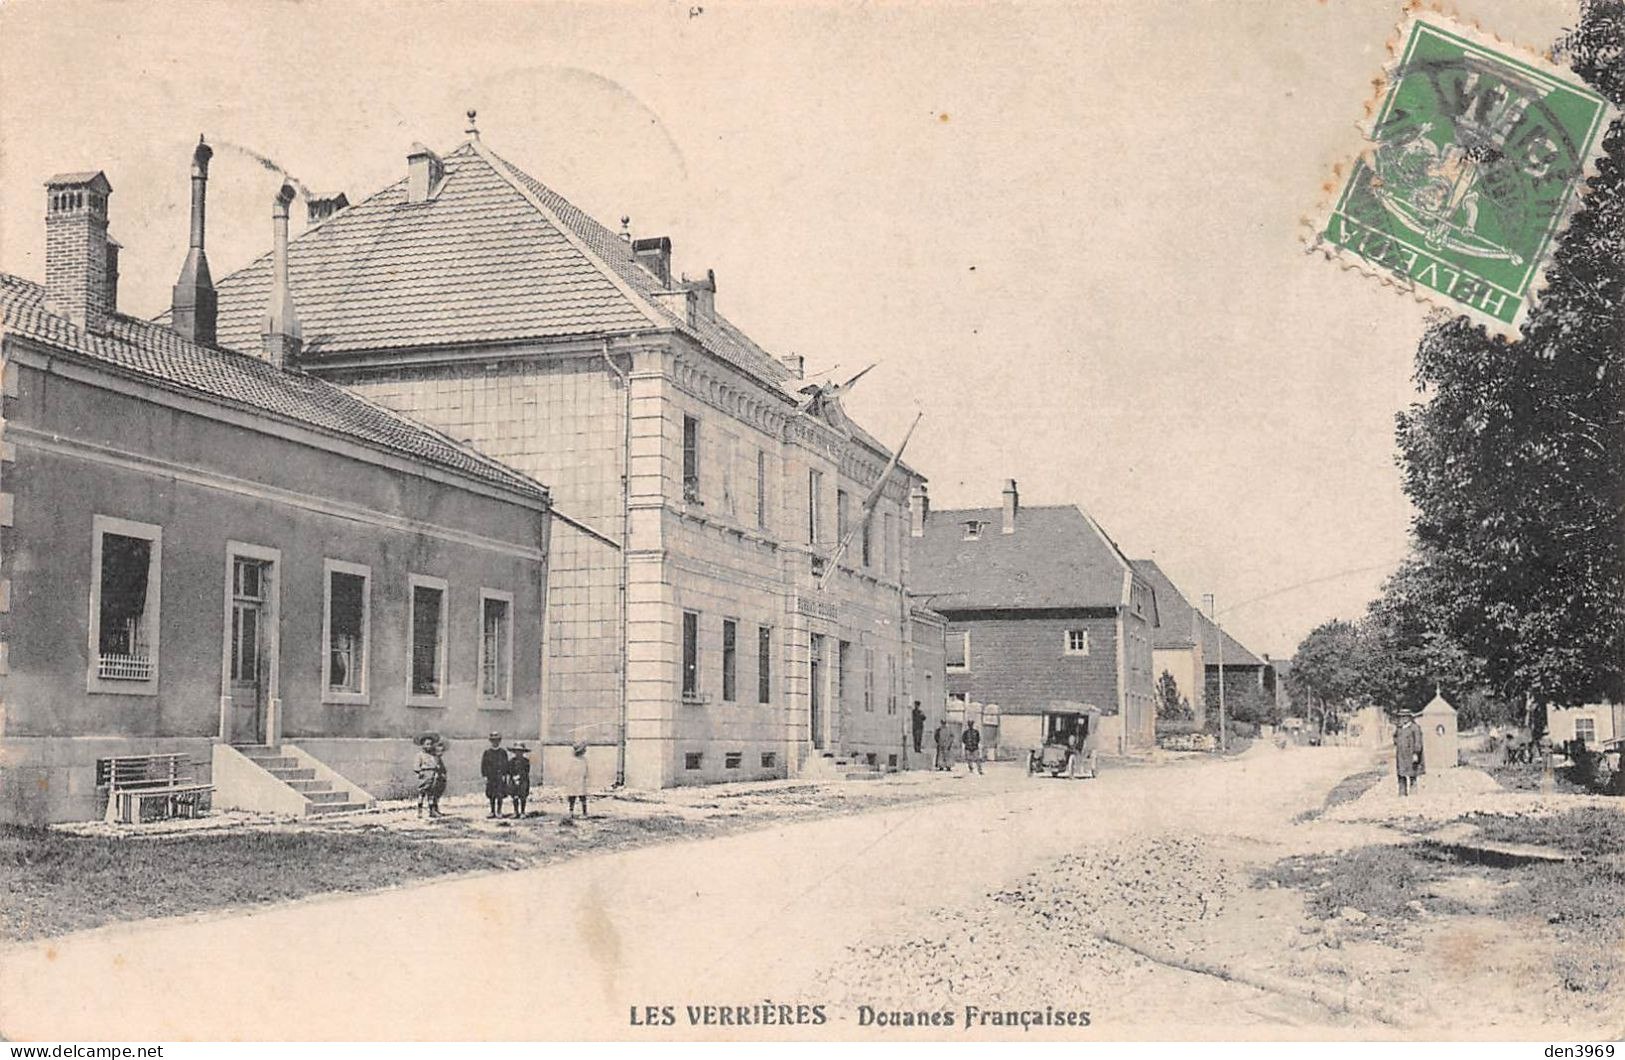 Suisse - NE - Les VERRIERES - Douanes Françaises - Voyagé 1909 (2 Scans) Marie Jouannot, 6 Rue Buzançais, Châteauroux 36 - Les Verrières